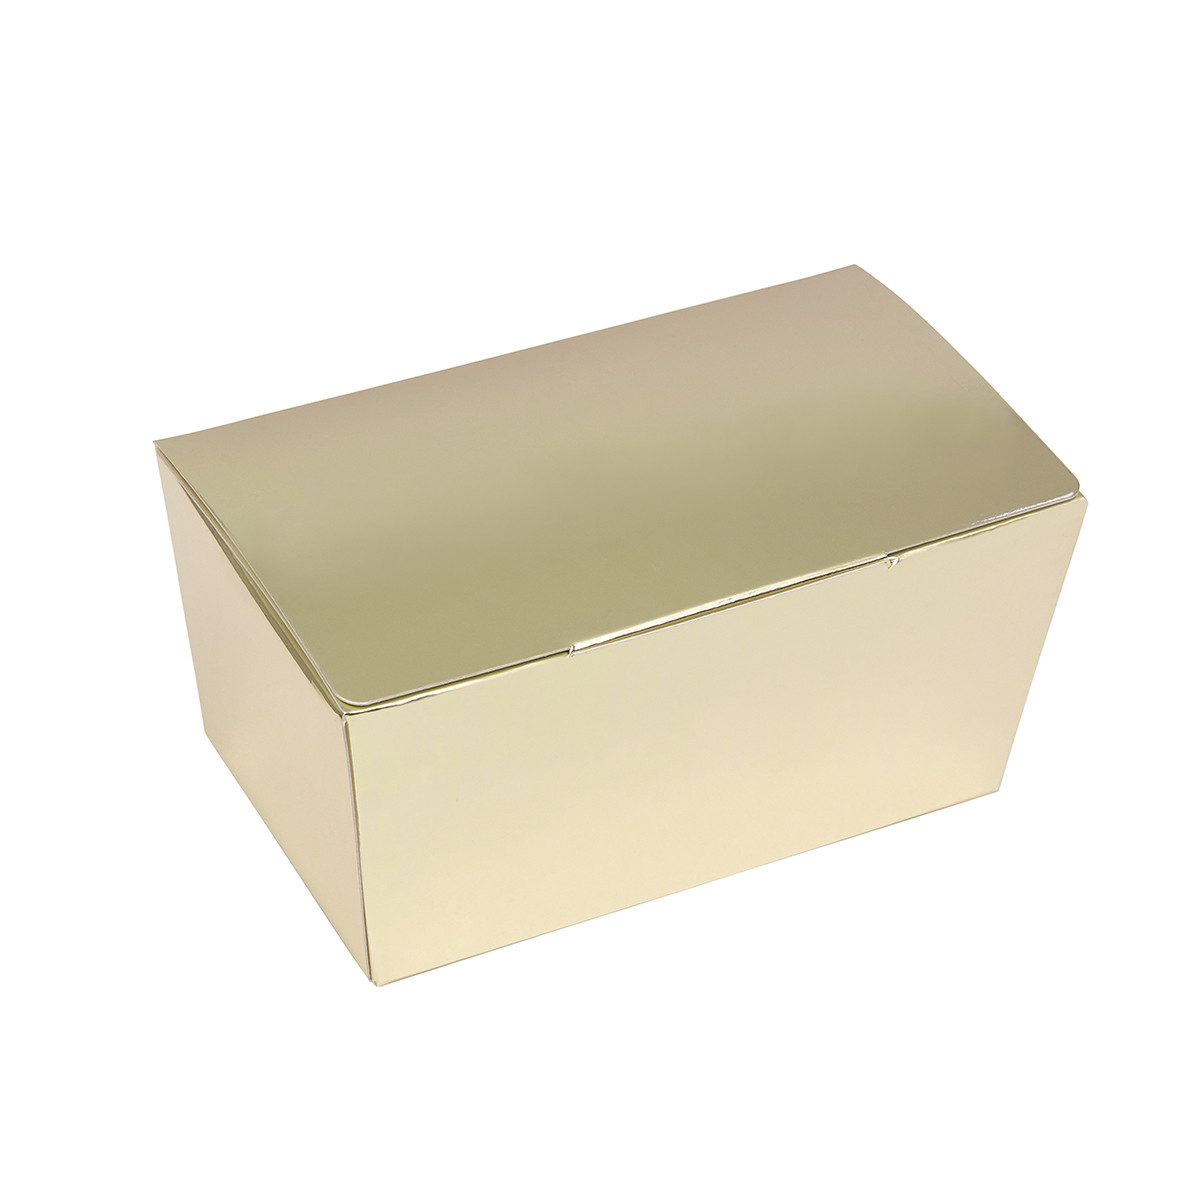 Bonbon box Gold Metallic -500 grams- 25 pieces